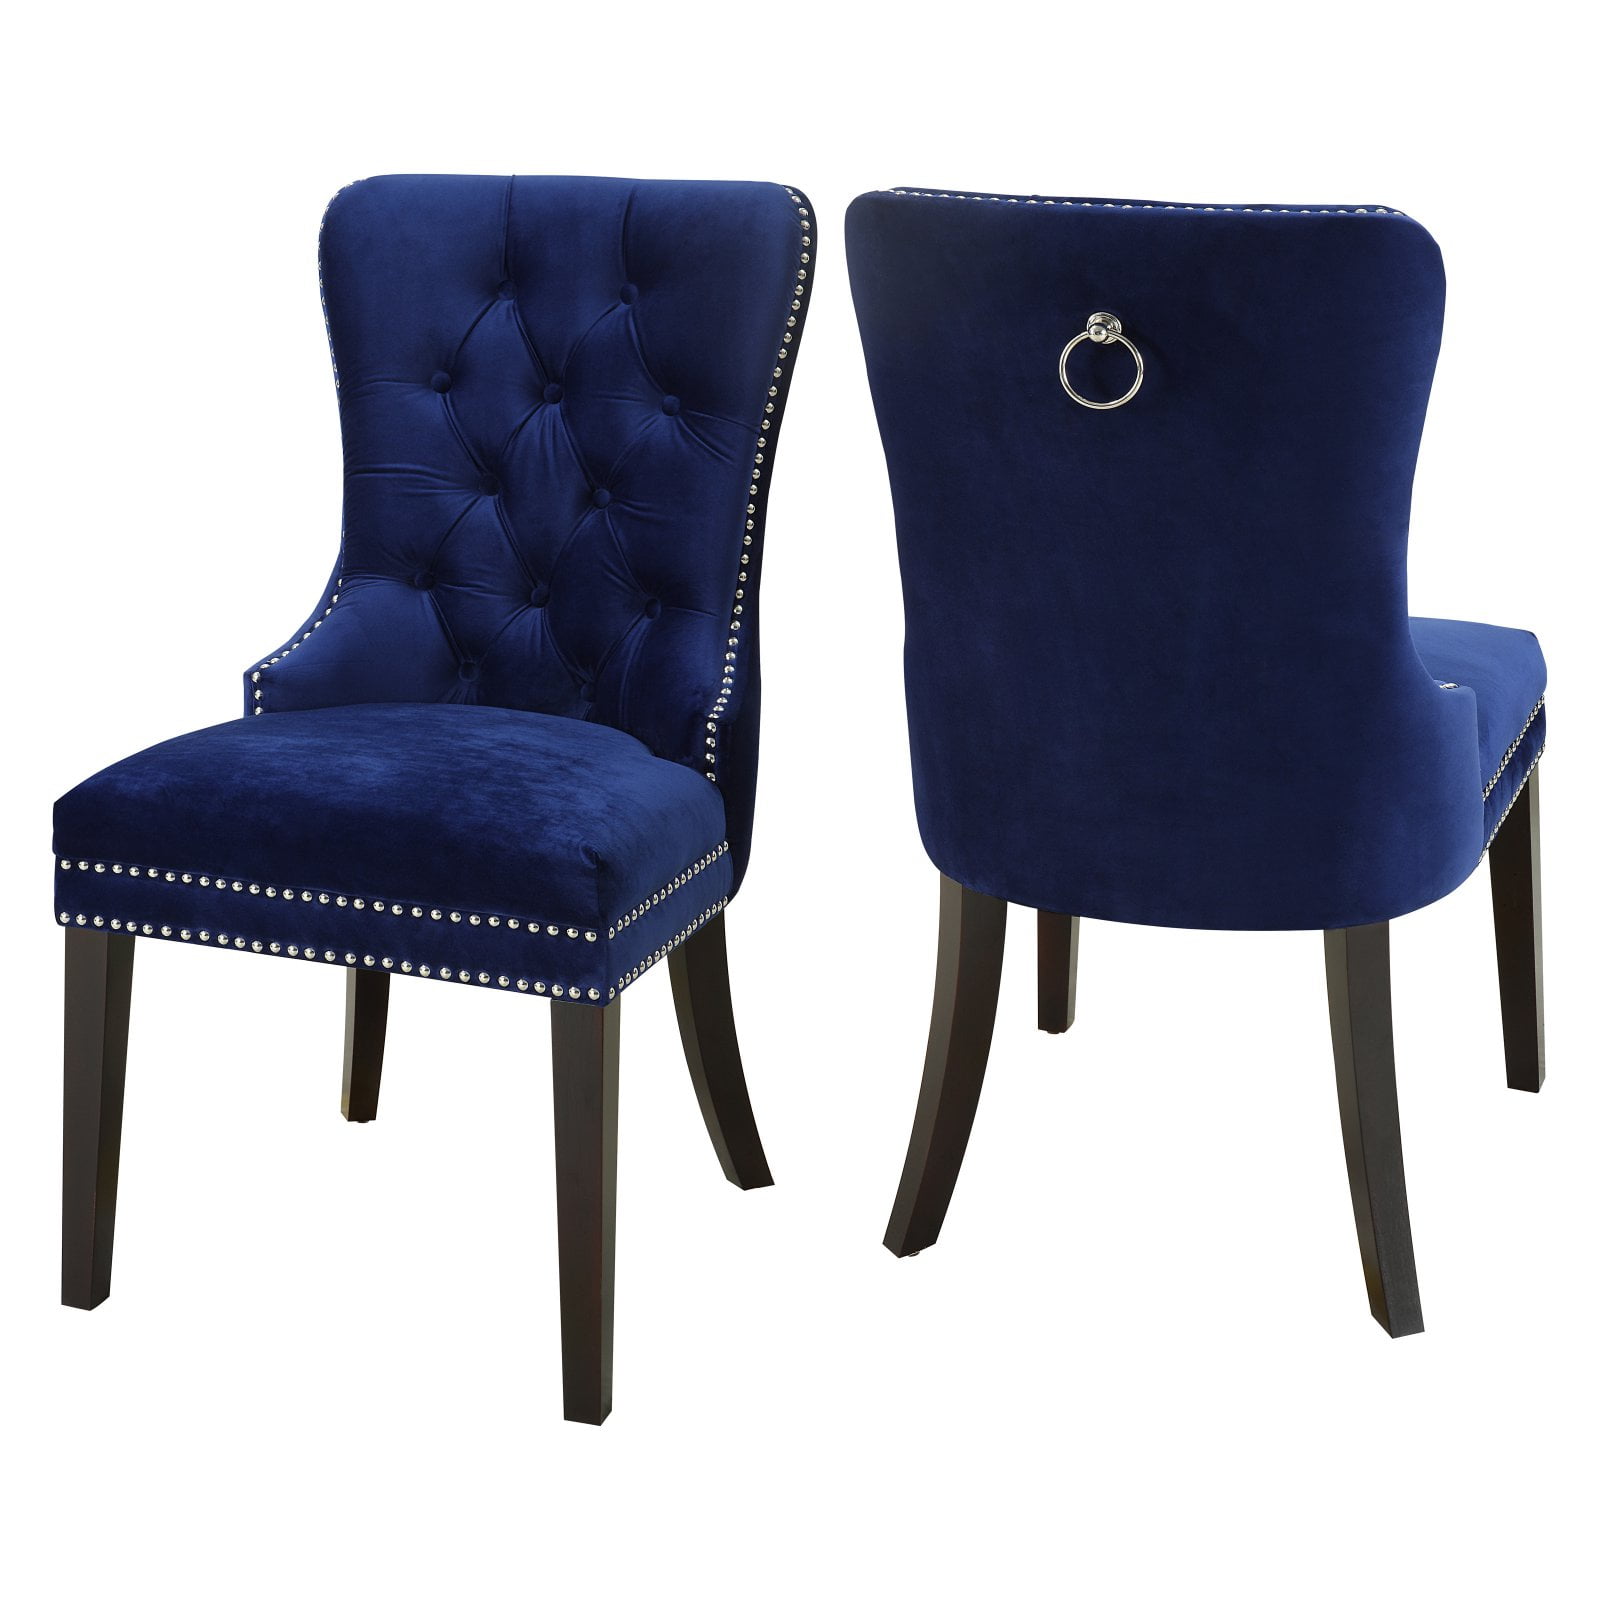 Meridian Furniture Nikki 19 5 H Velvet, Navy Blue Tufted Dining Chair